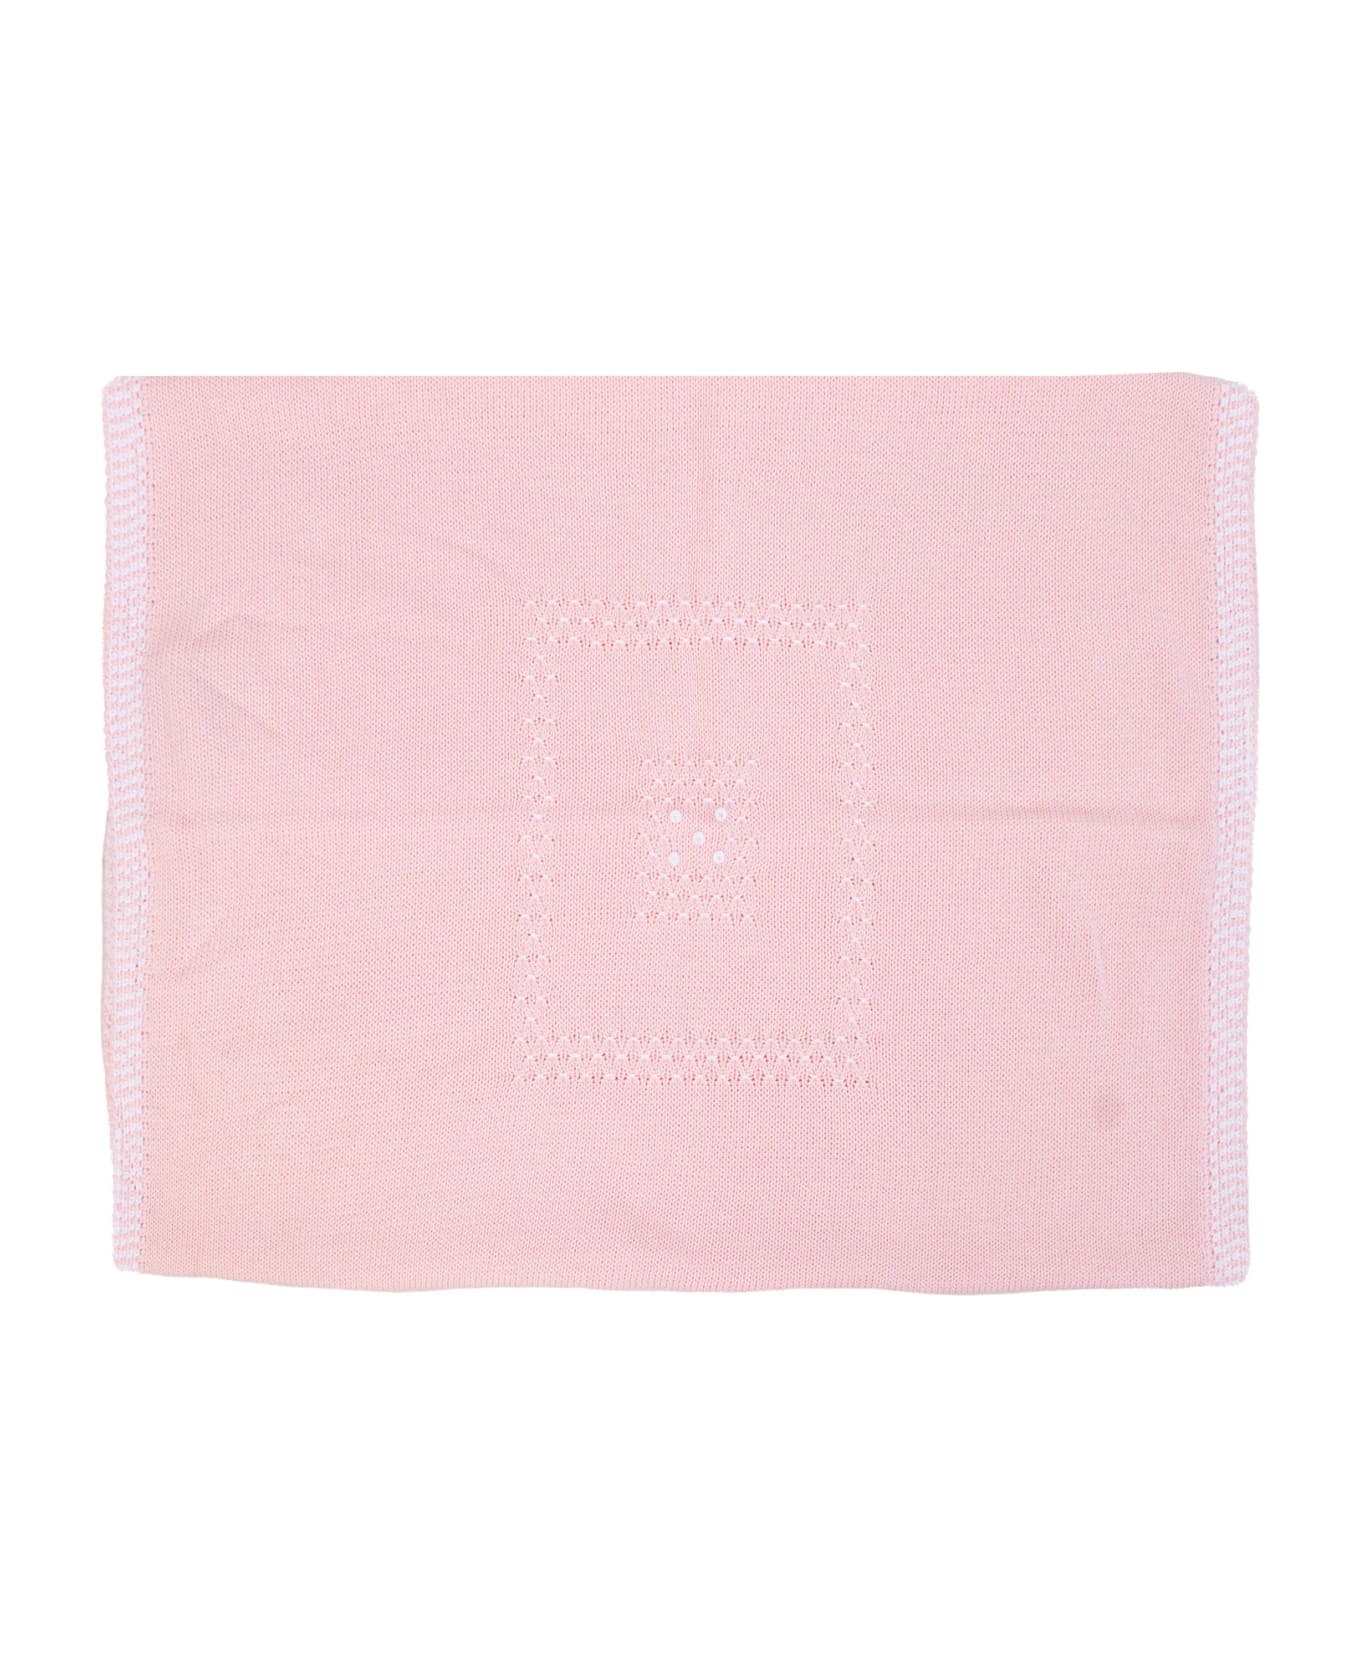 Piccola Giuggiola Cotton Knit Blanket - Rose